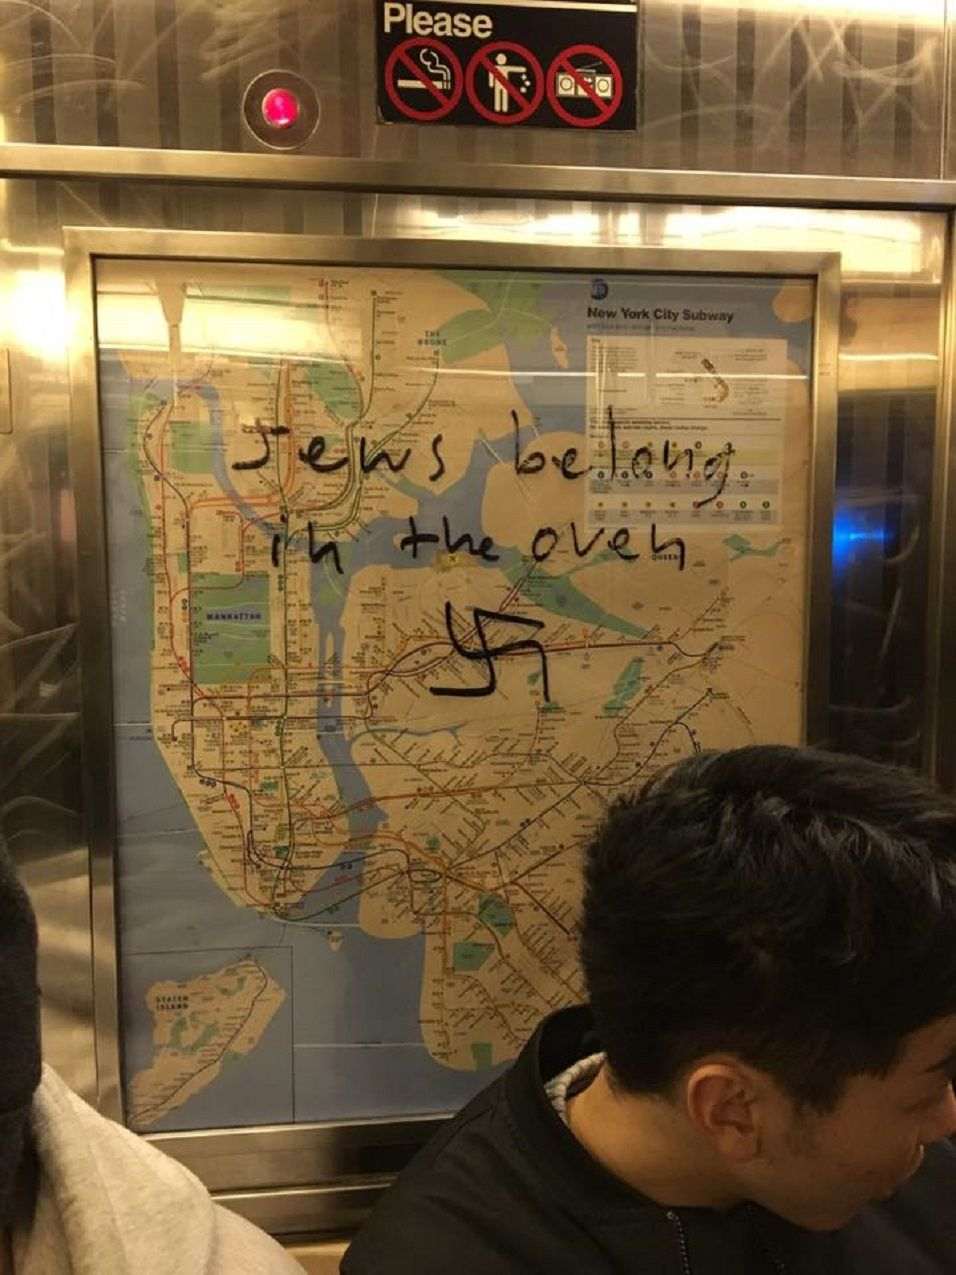 Apareixen símbols nazis al metro de Nova York i els viatgers els esborren